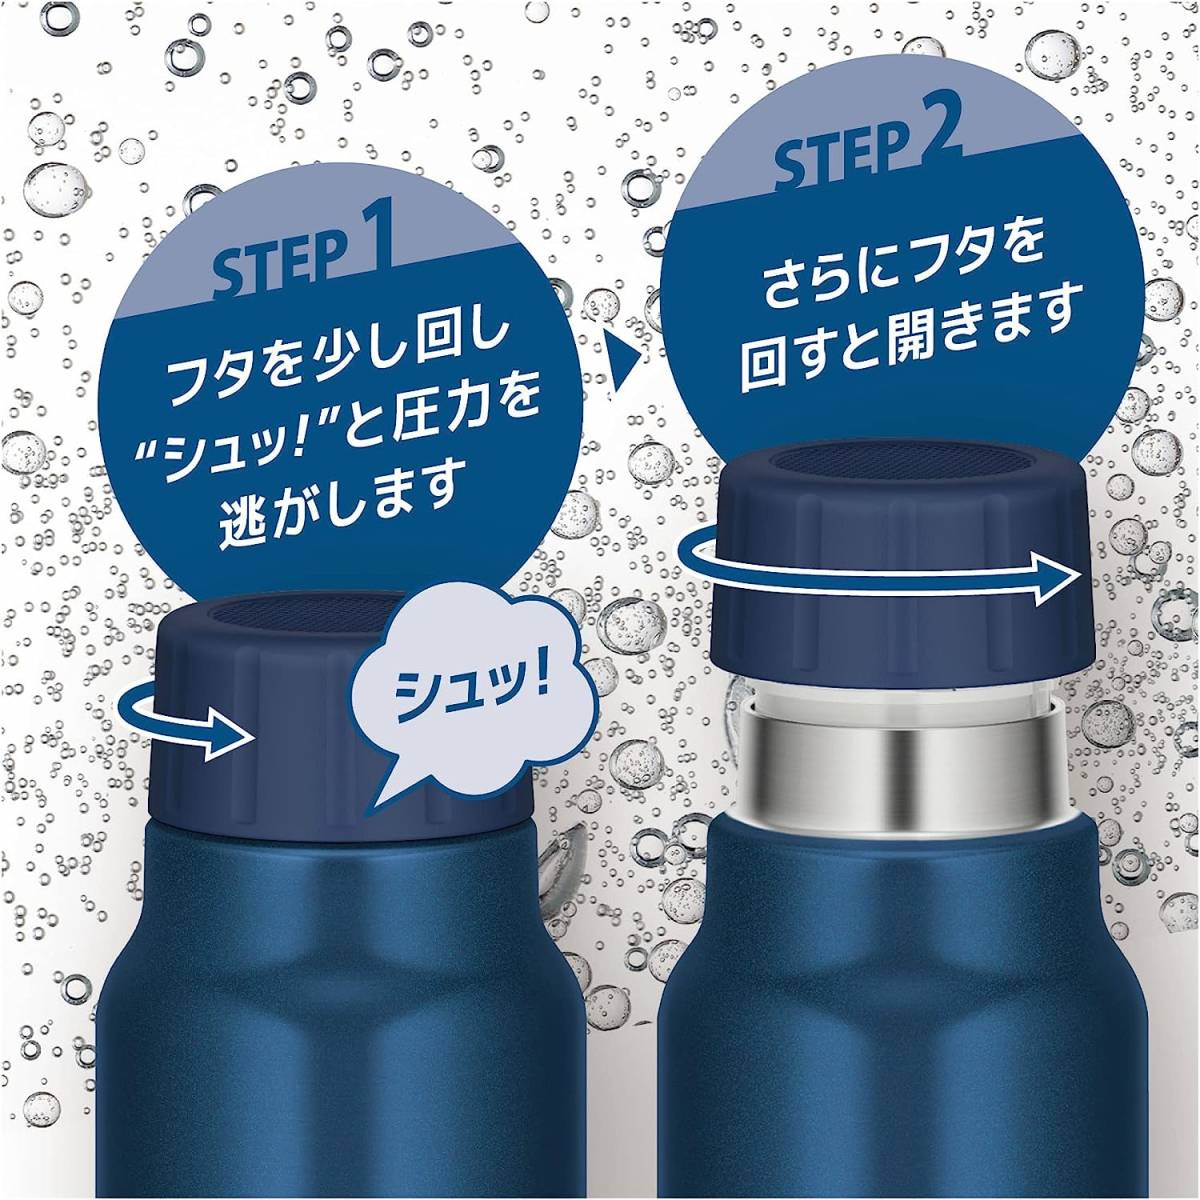 【新品】サーモス 水筒 保冷炭酸飲料ボトル 1L ネイビー 保冷専用 FJK-1000 NVY_画像4